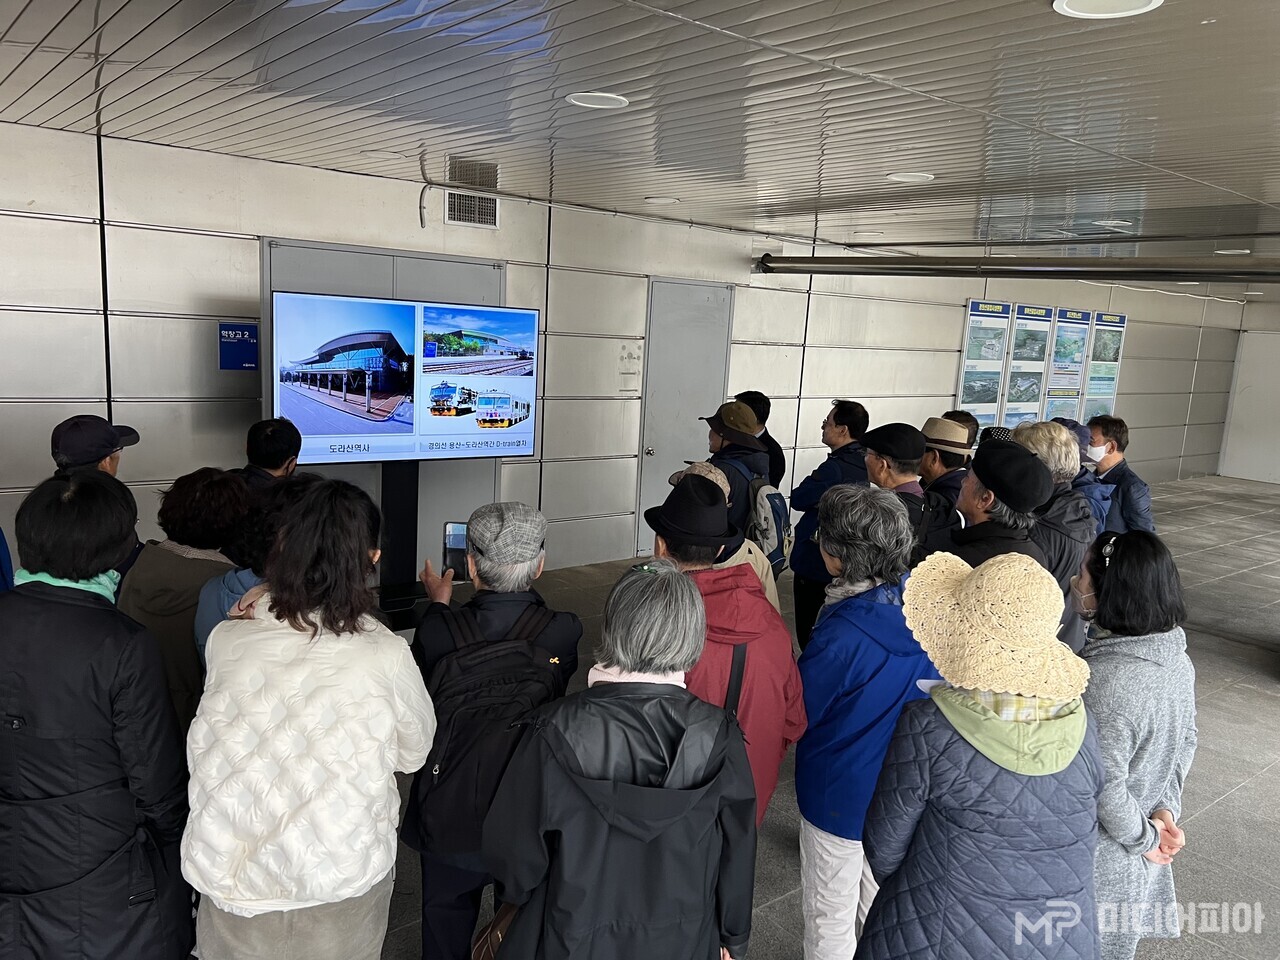 사진은 '도라산역' 플랫폼에 설치된 영상장치 앞에서 역장의 설명을 듣는 참가자들의 모습이다. Ⓒ강승혁